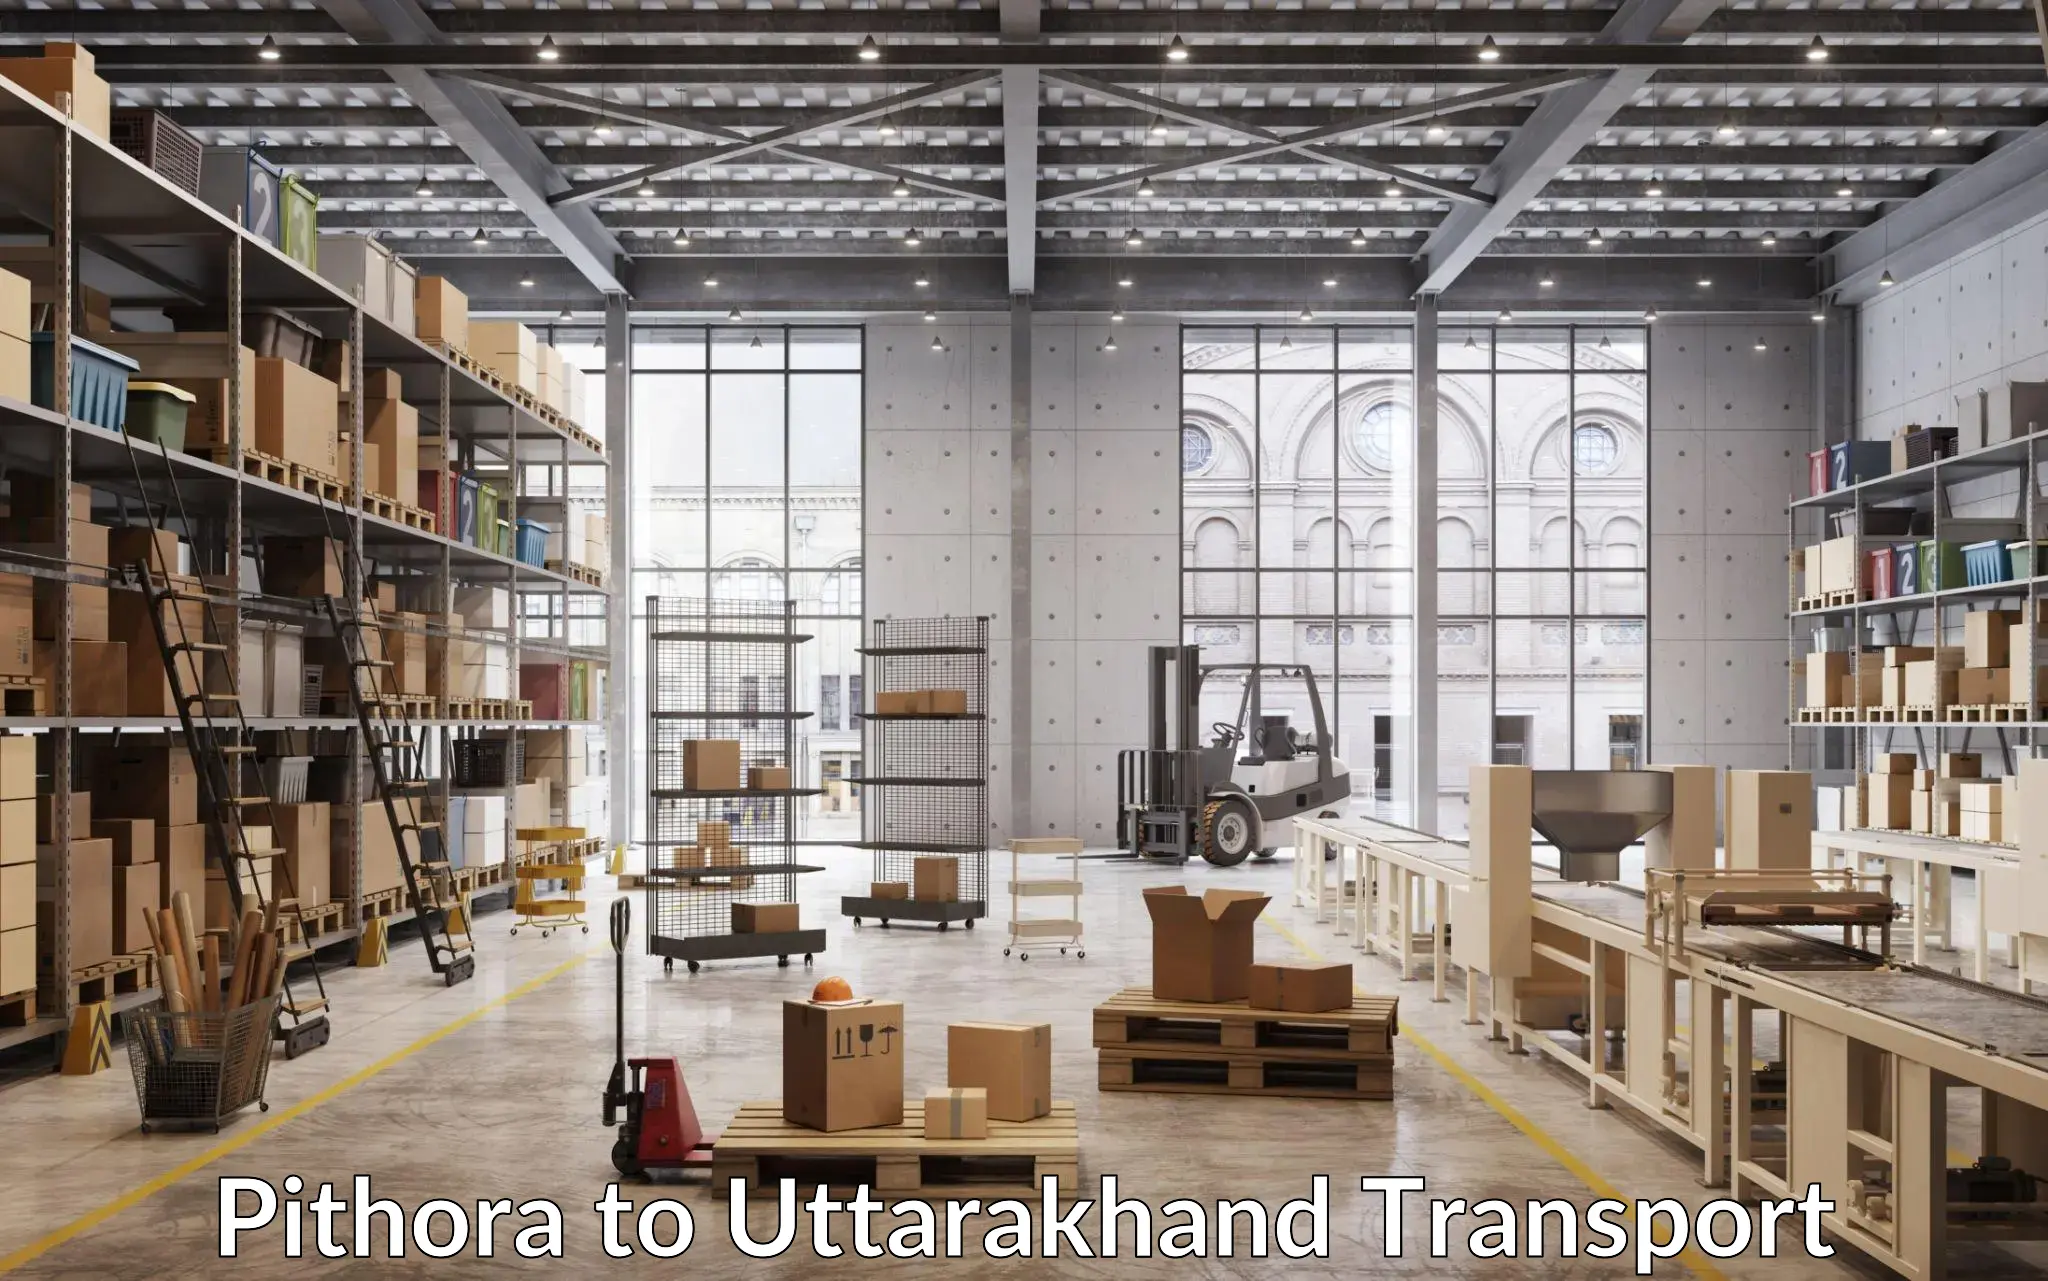 Land transport services Pithora to Uttarakhand